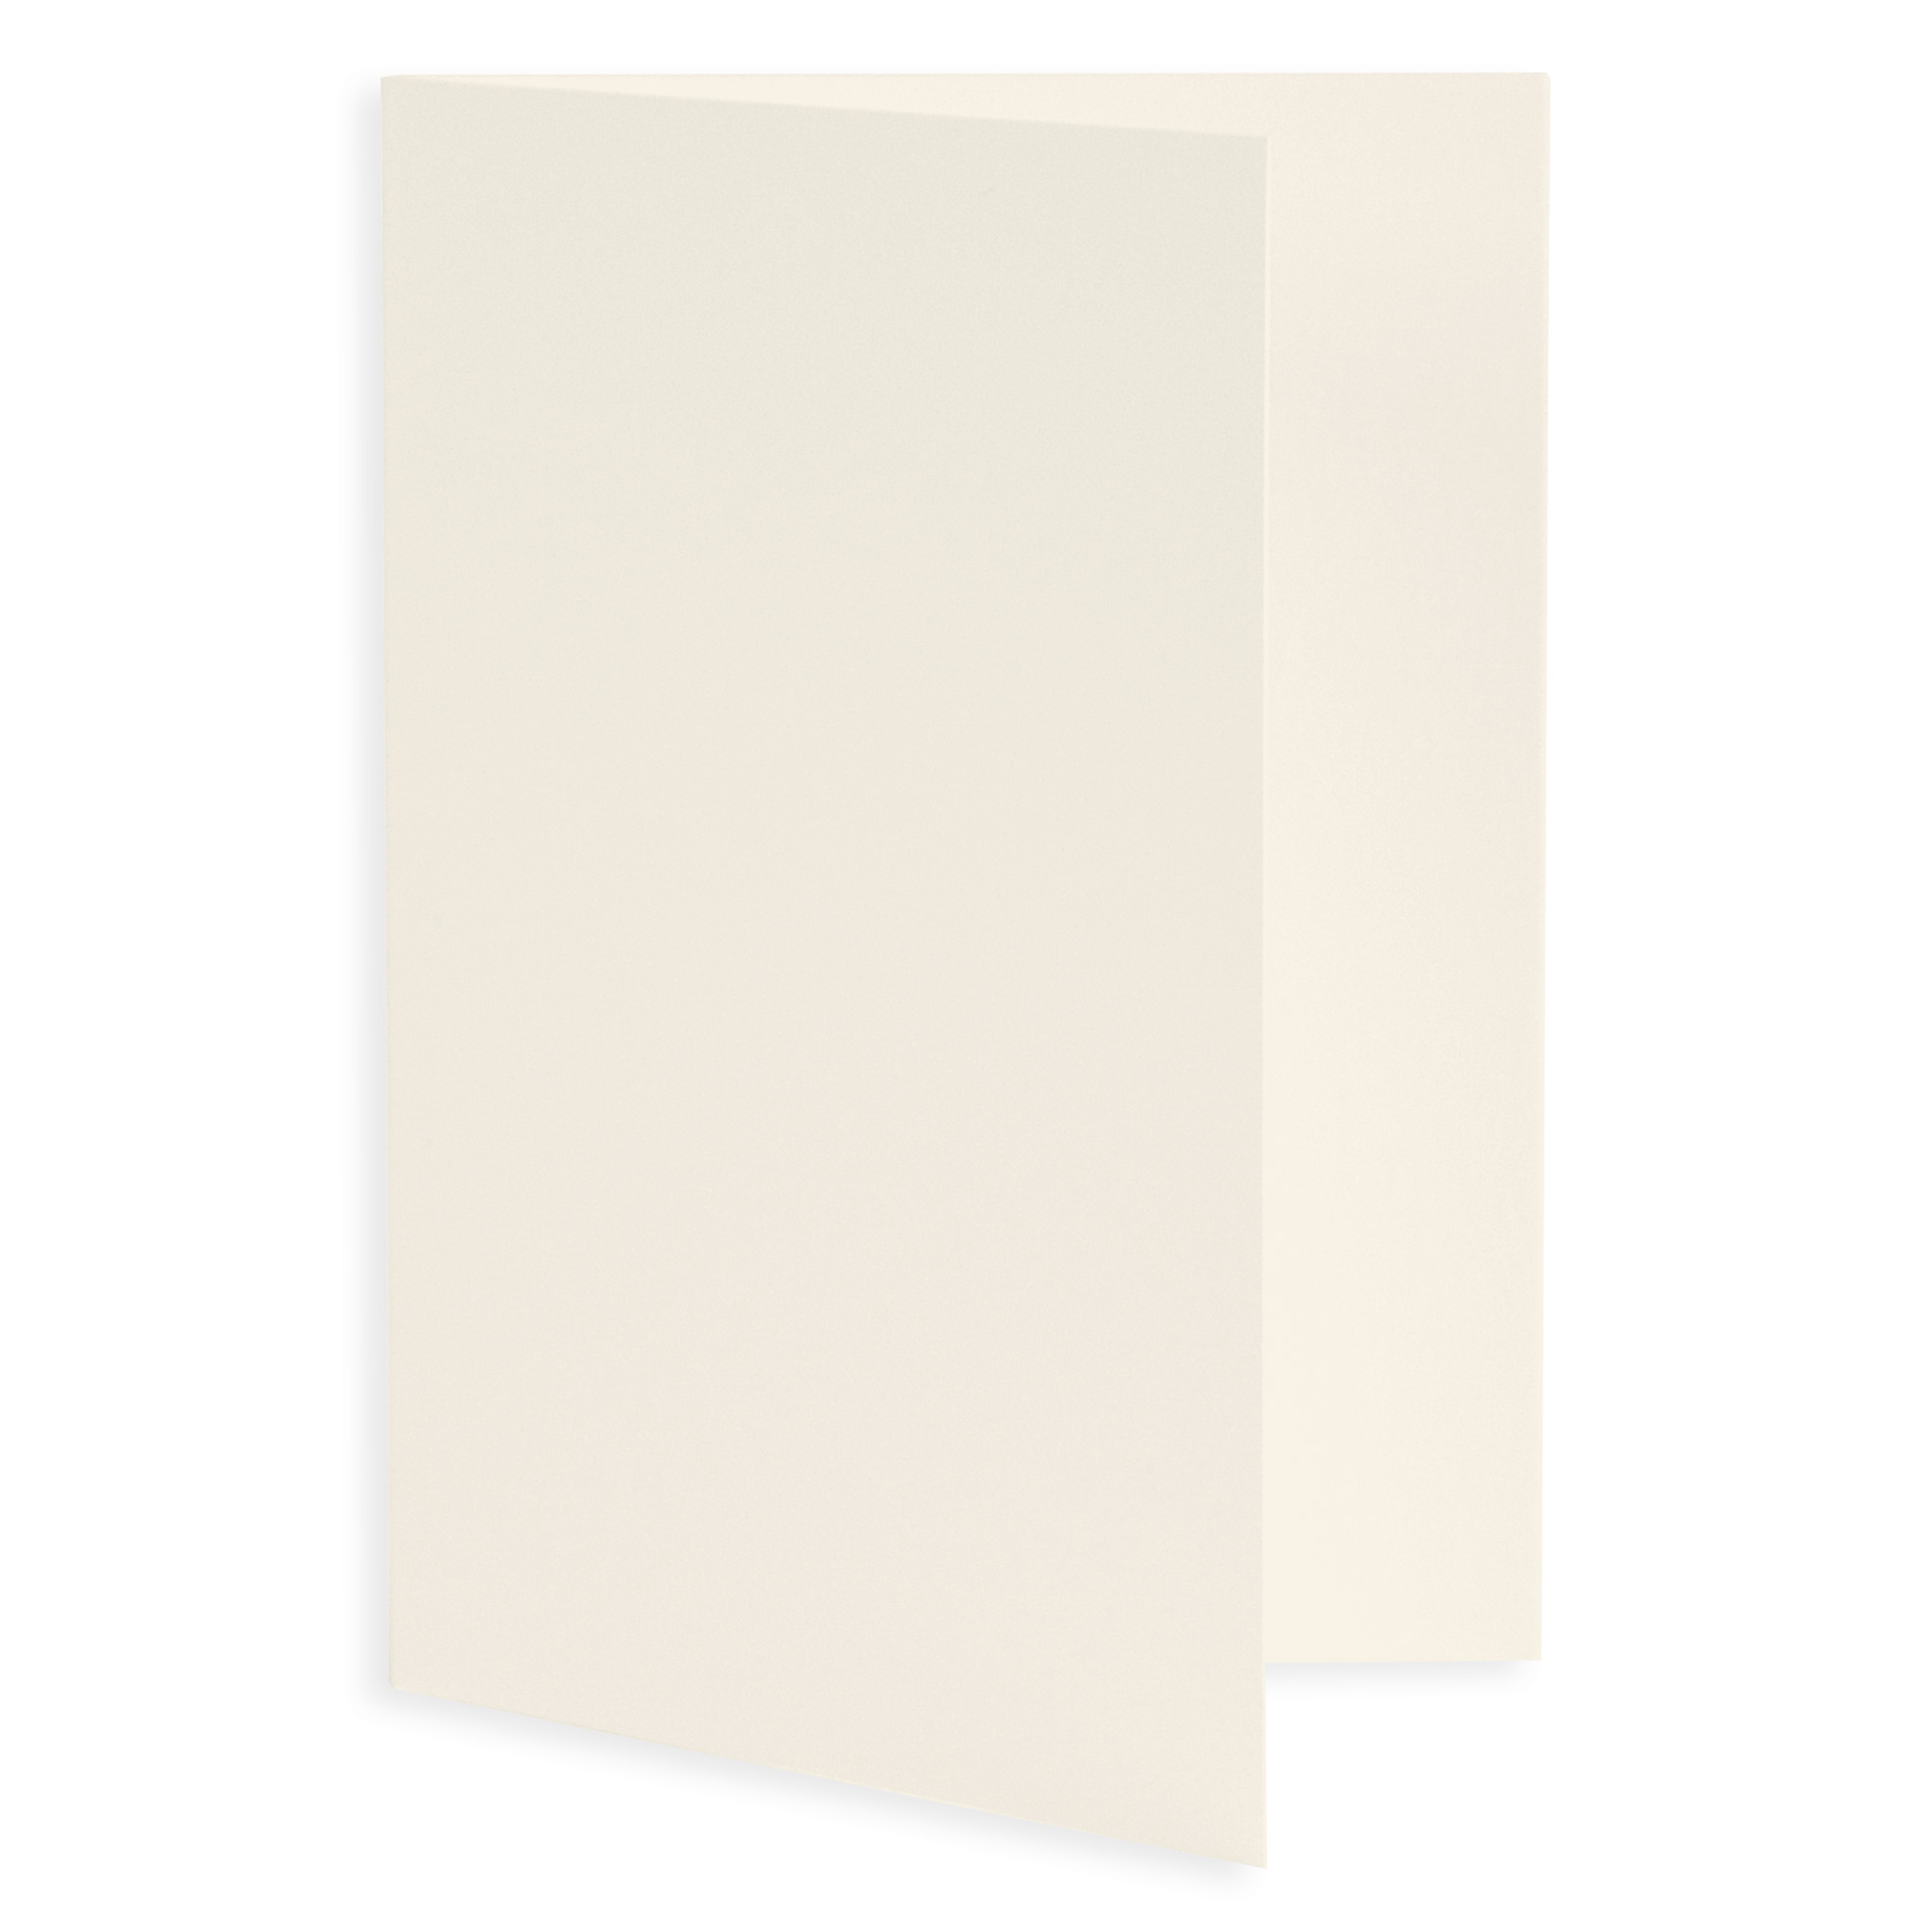 Ecru Folded Card - A6 LCI Smooth 4 1/2 x 6 1/4 65C